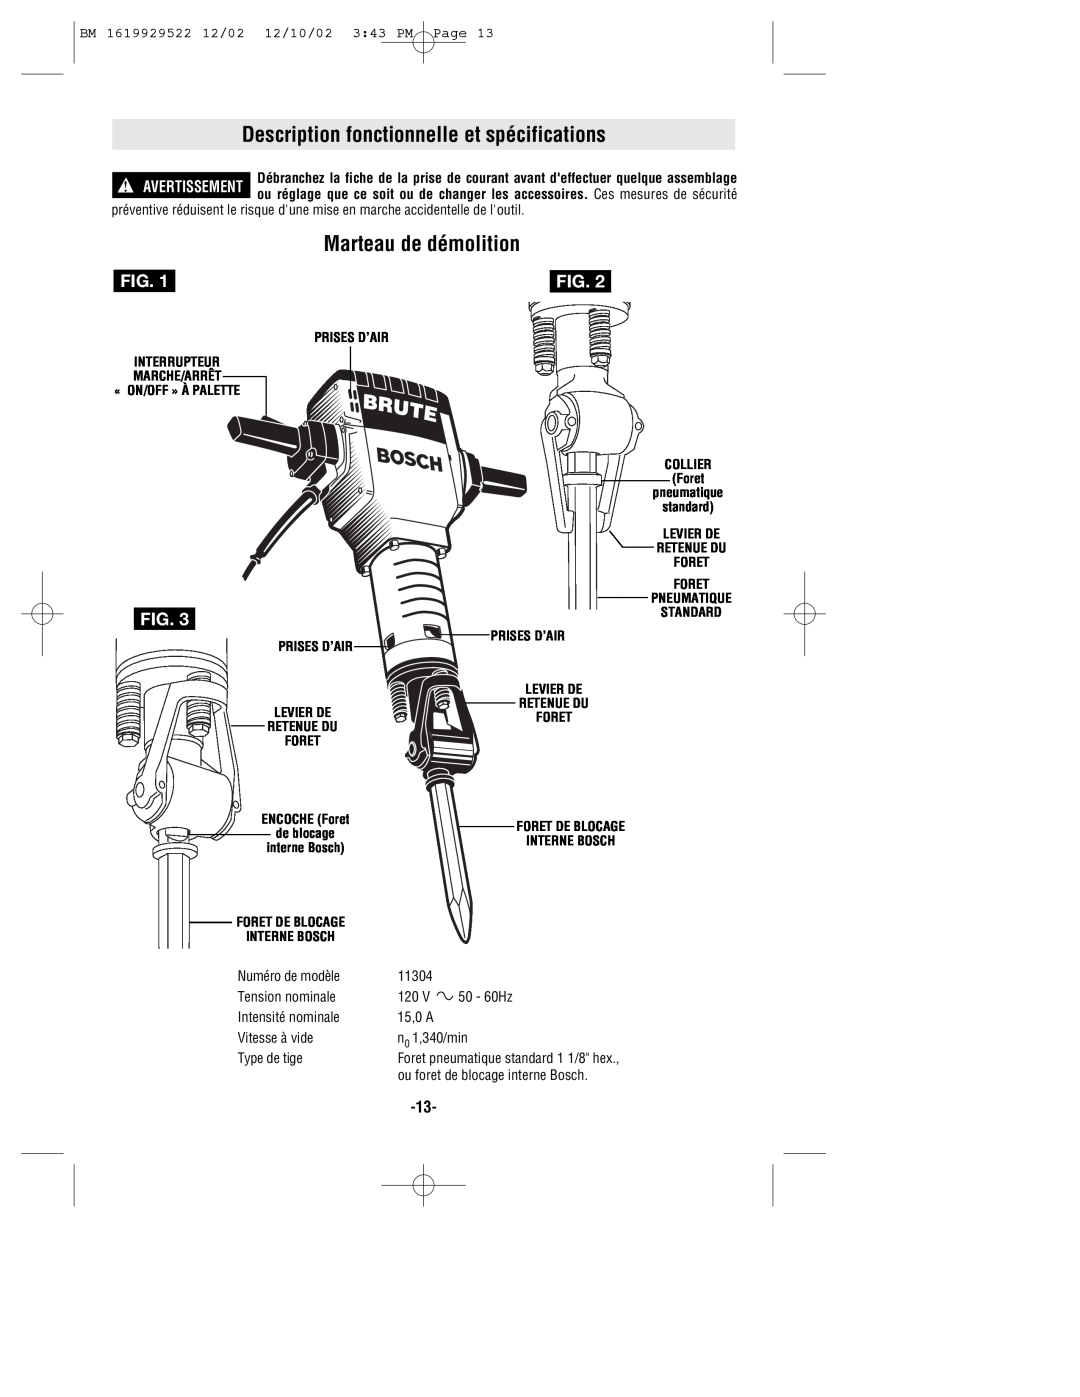 Bosch Power Tools 11304K Description fonctionnelle et spécifications, Marteau de démolition, Numéro de modèle, 50 - 60Hz 